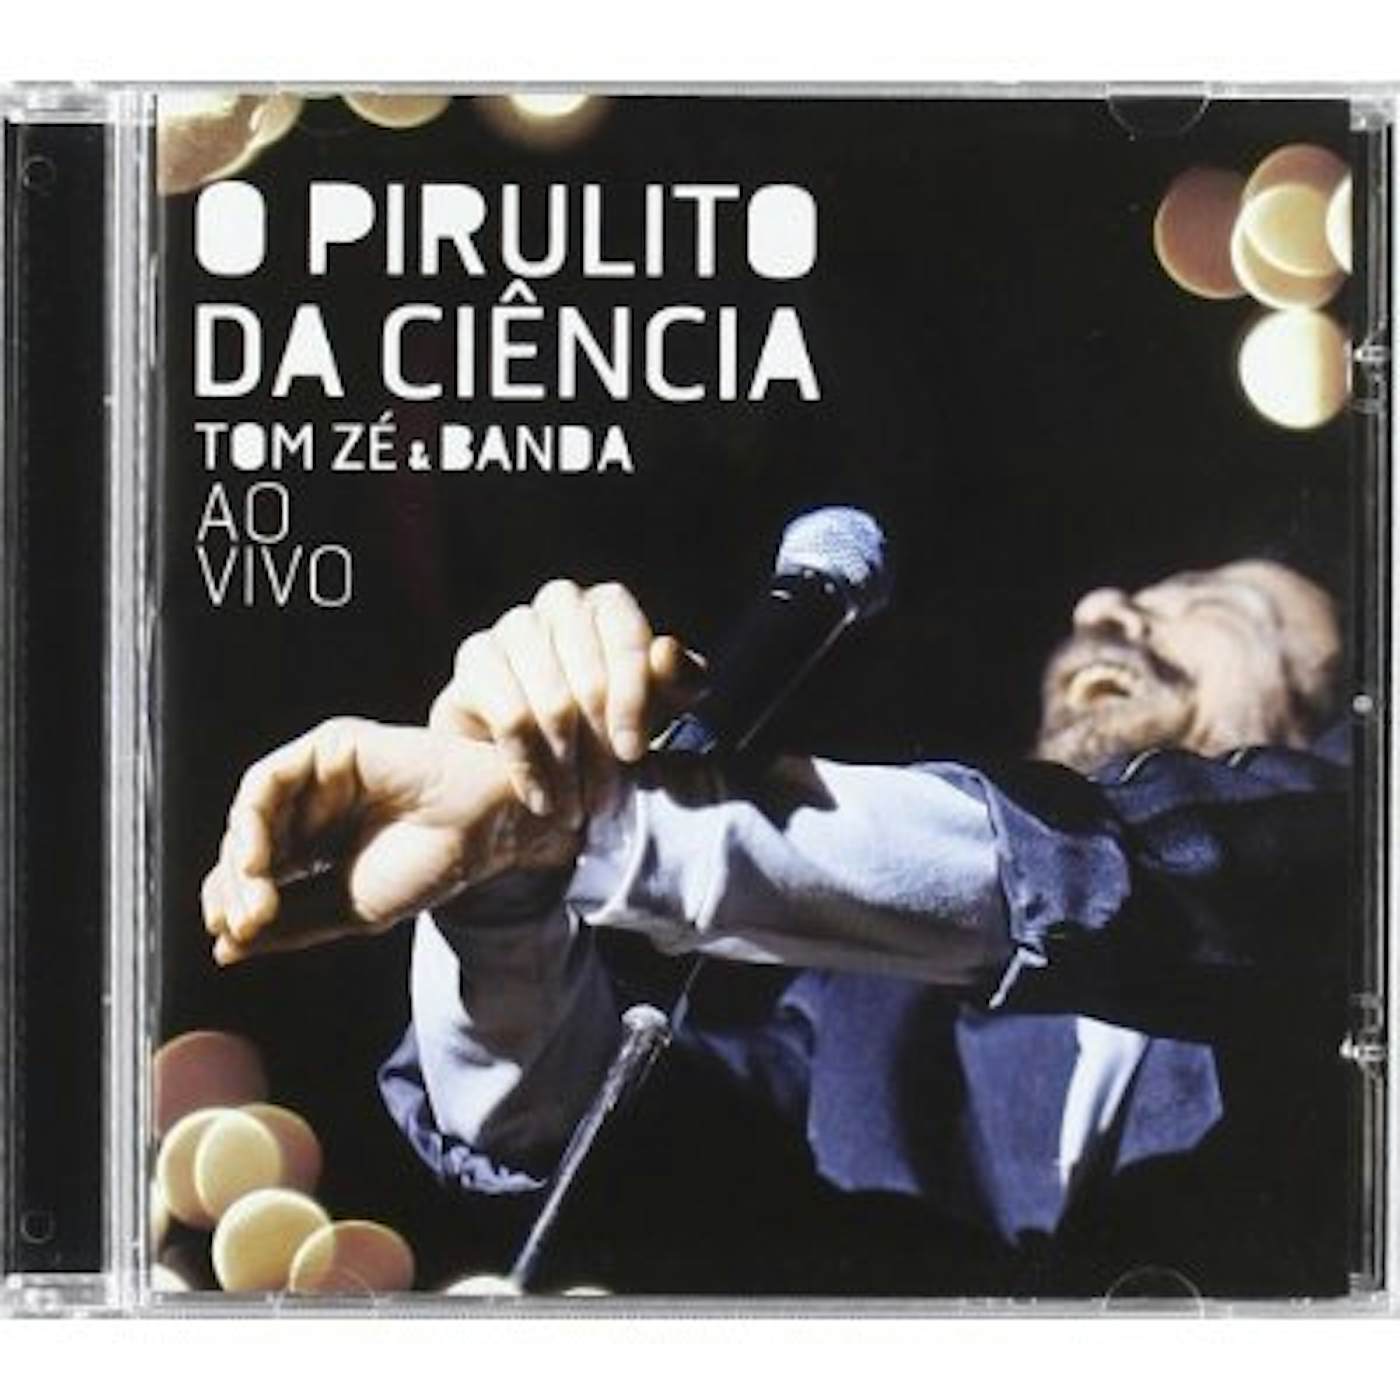 Tom Zé PIRULITO DA CIENCIA CD